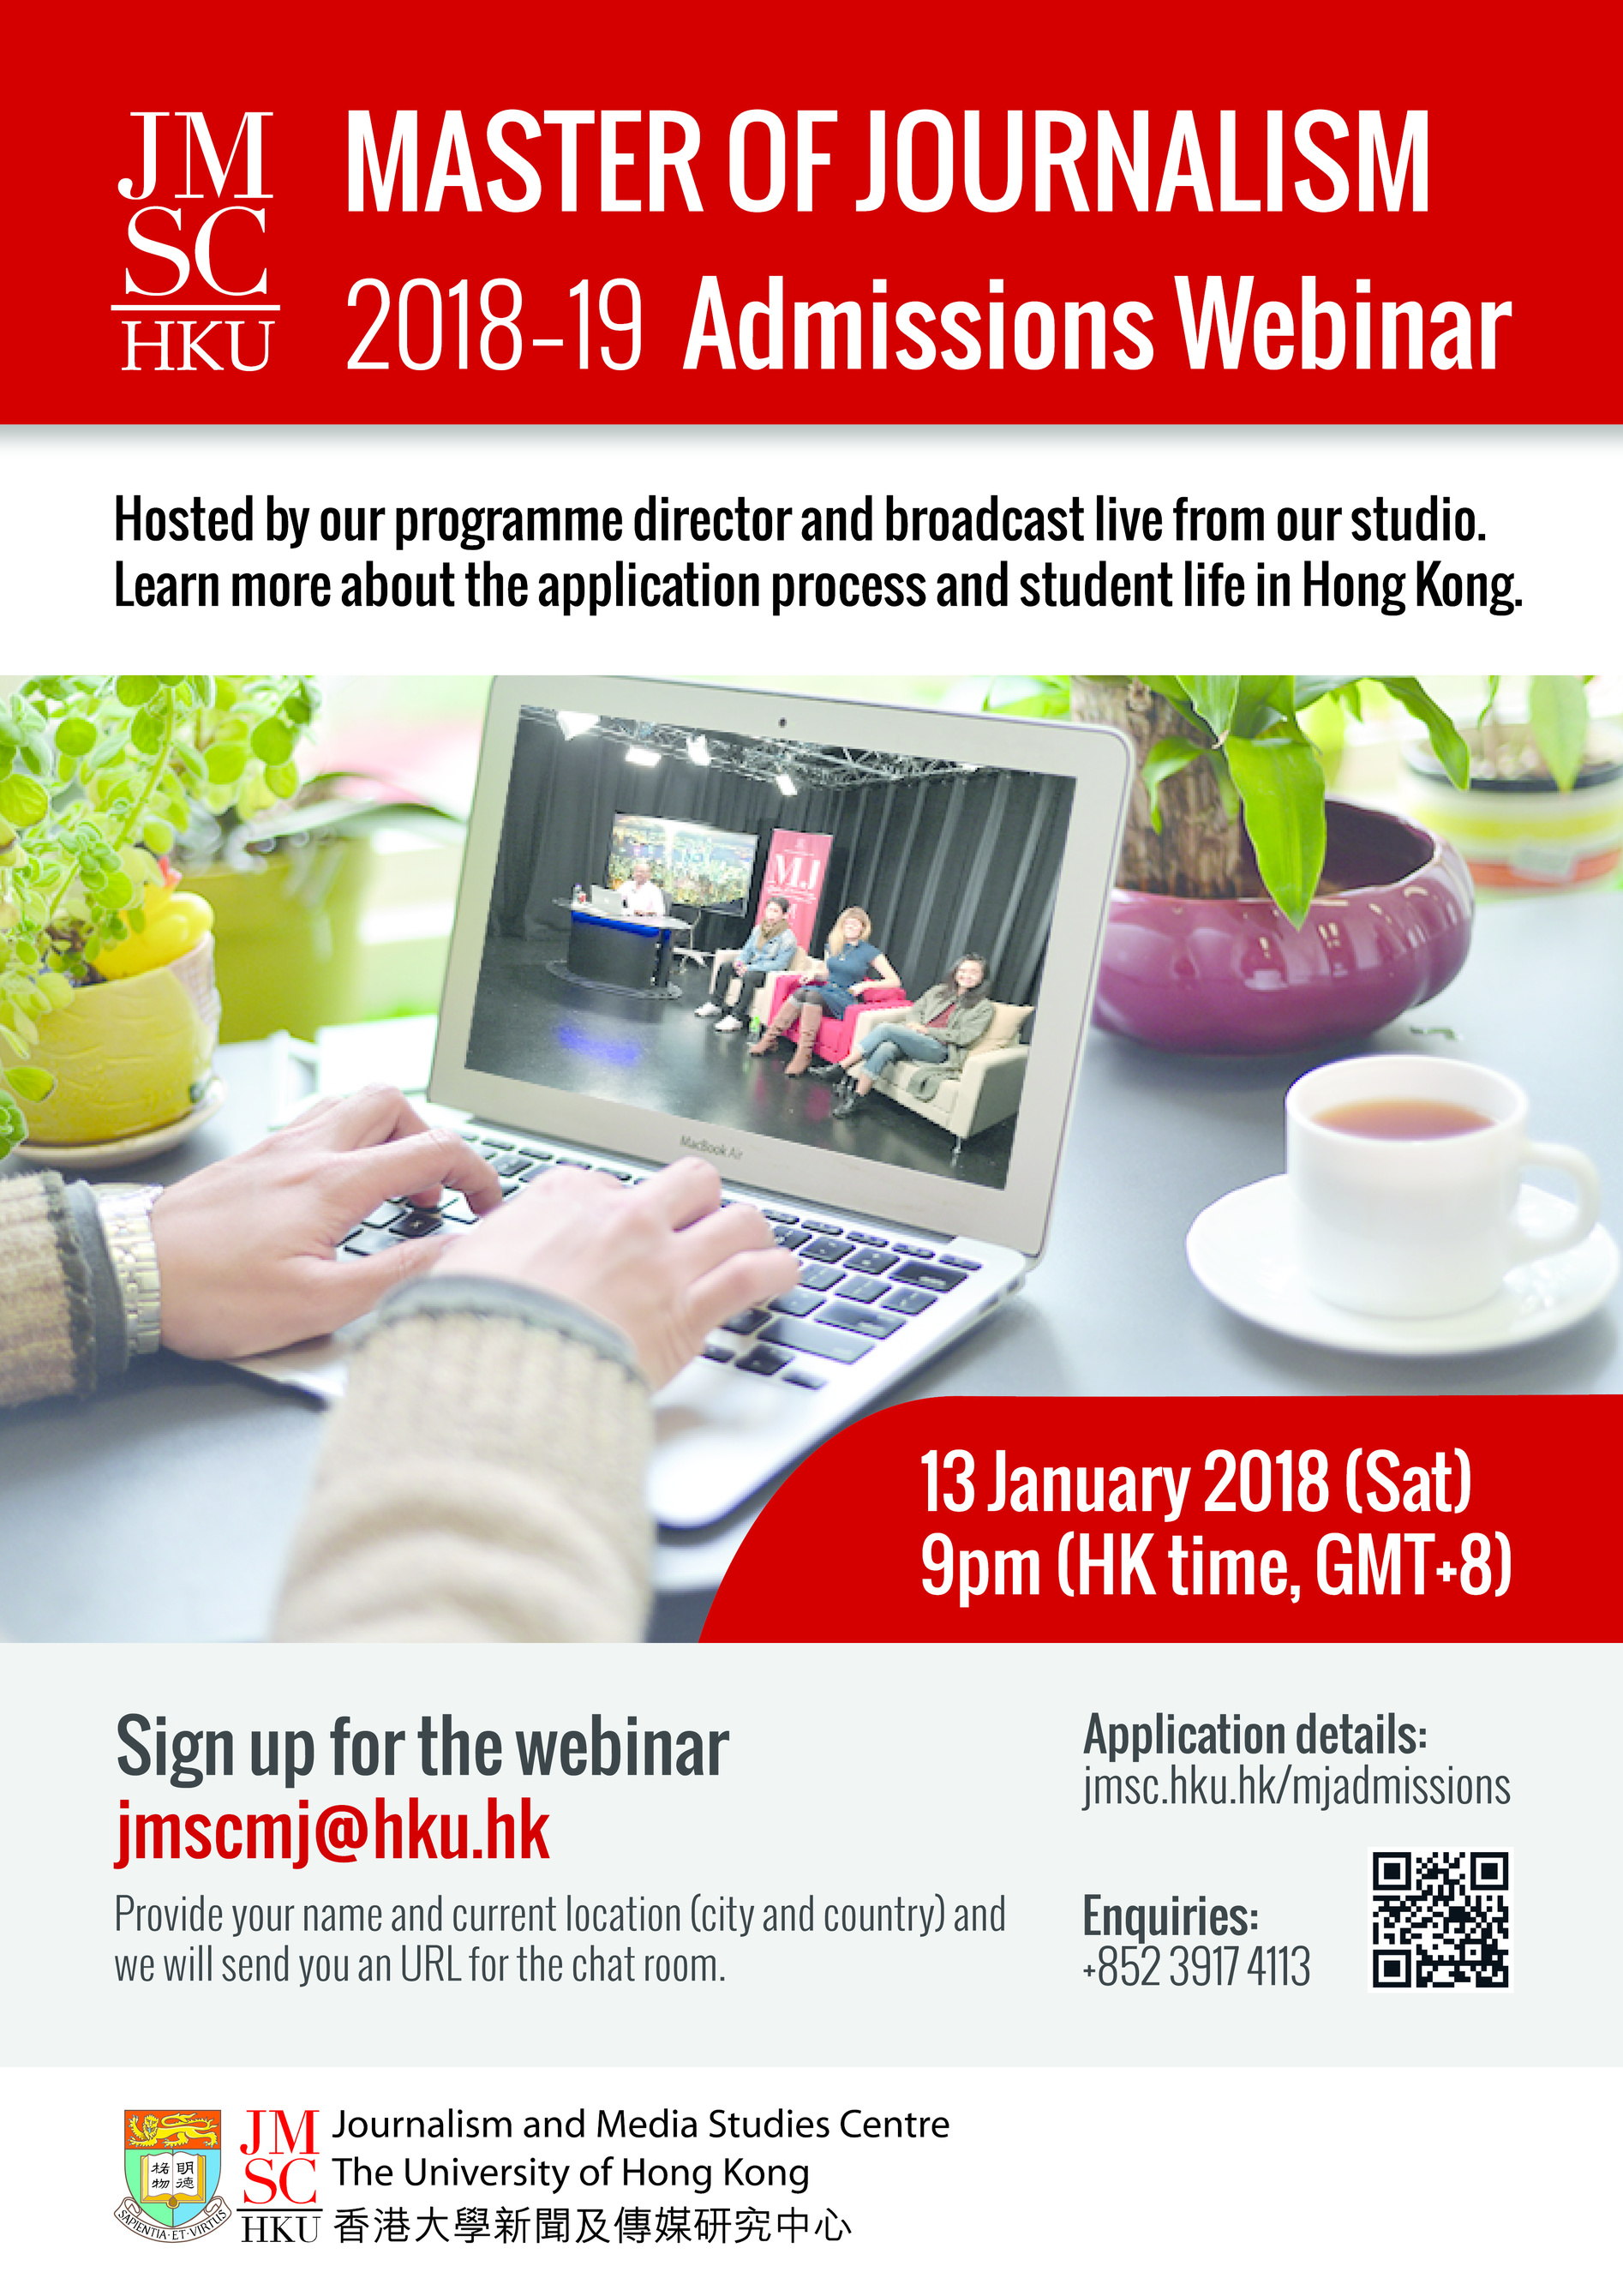 Master of Journalism 2018-19 Admissions Webinar: 13 January - Register at jmscmj@hku.hk